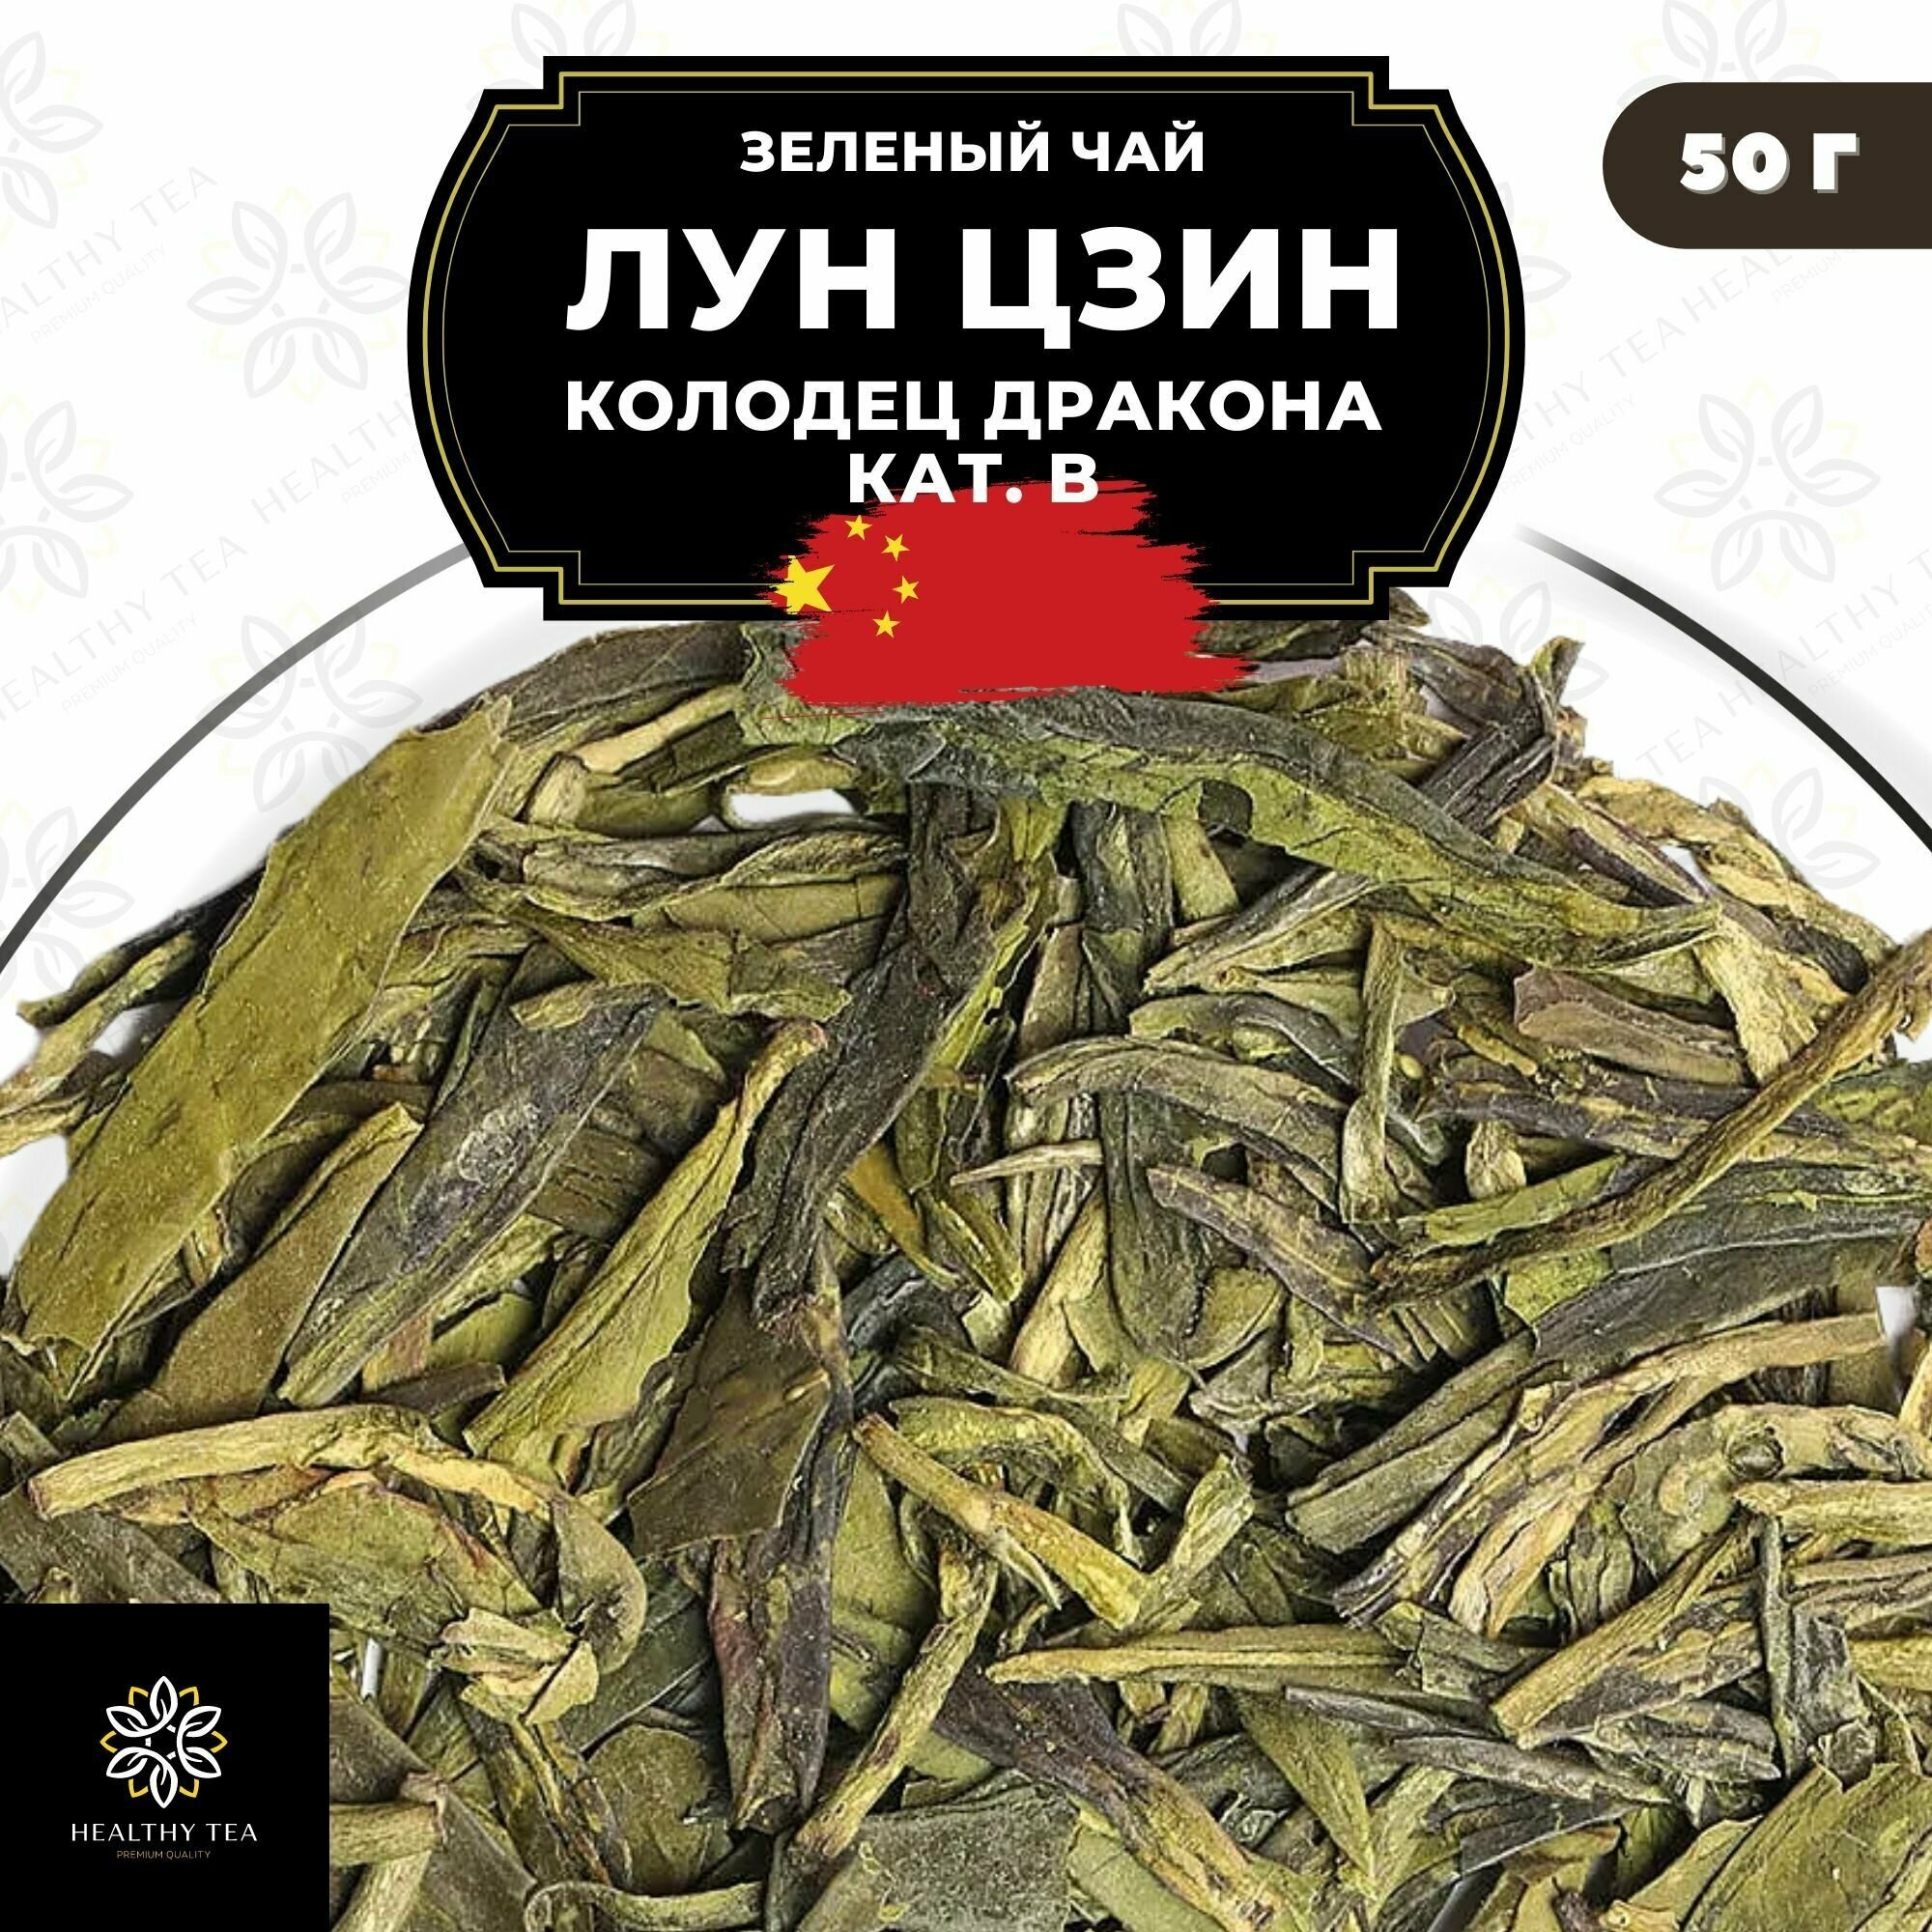 Китайский зеленый чай без добавок Лун Цзин (Колодец дракона) кат. B Полезный чай / HEALTHY TEA, 50 г